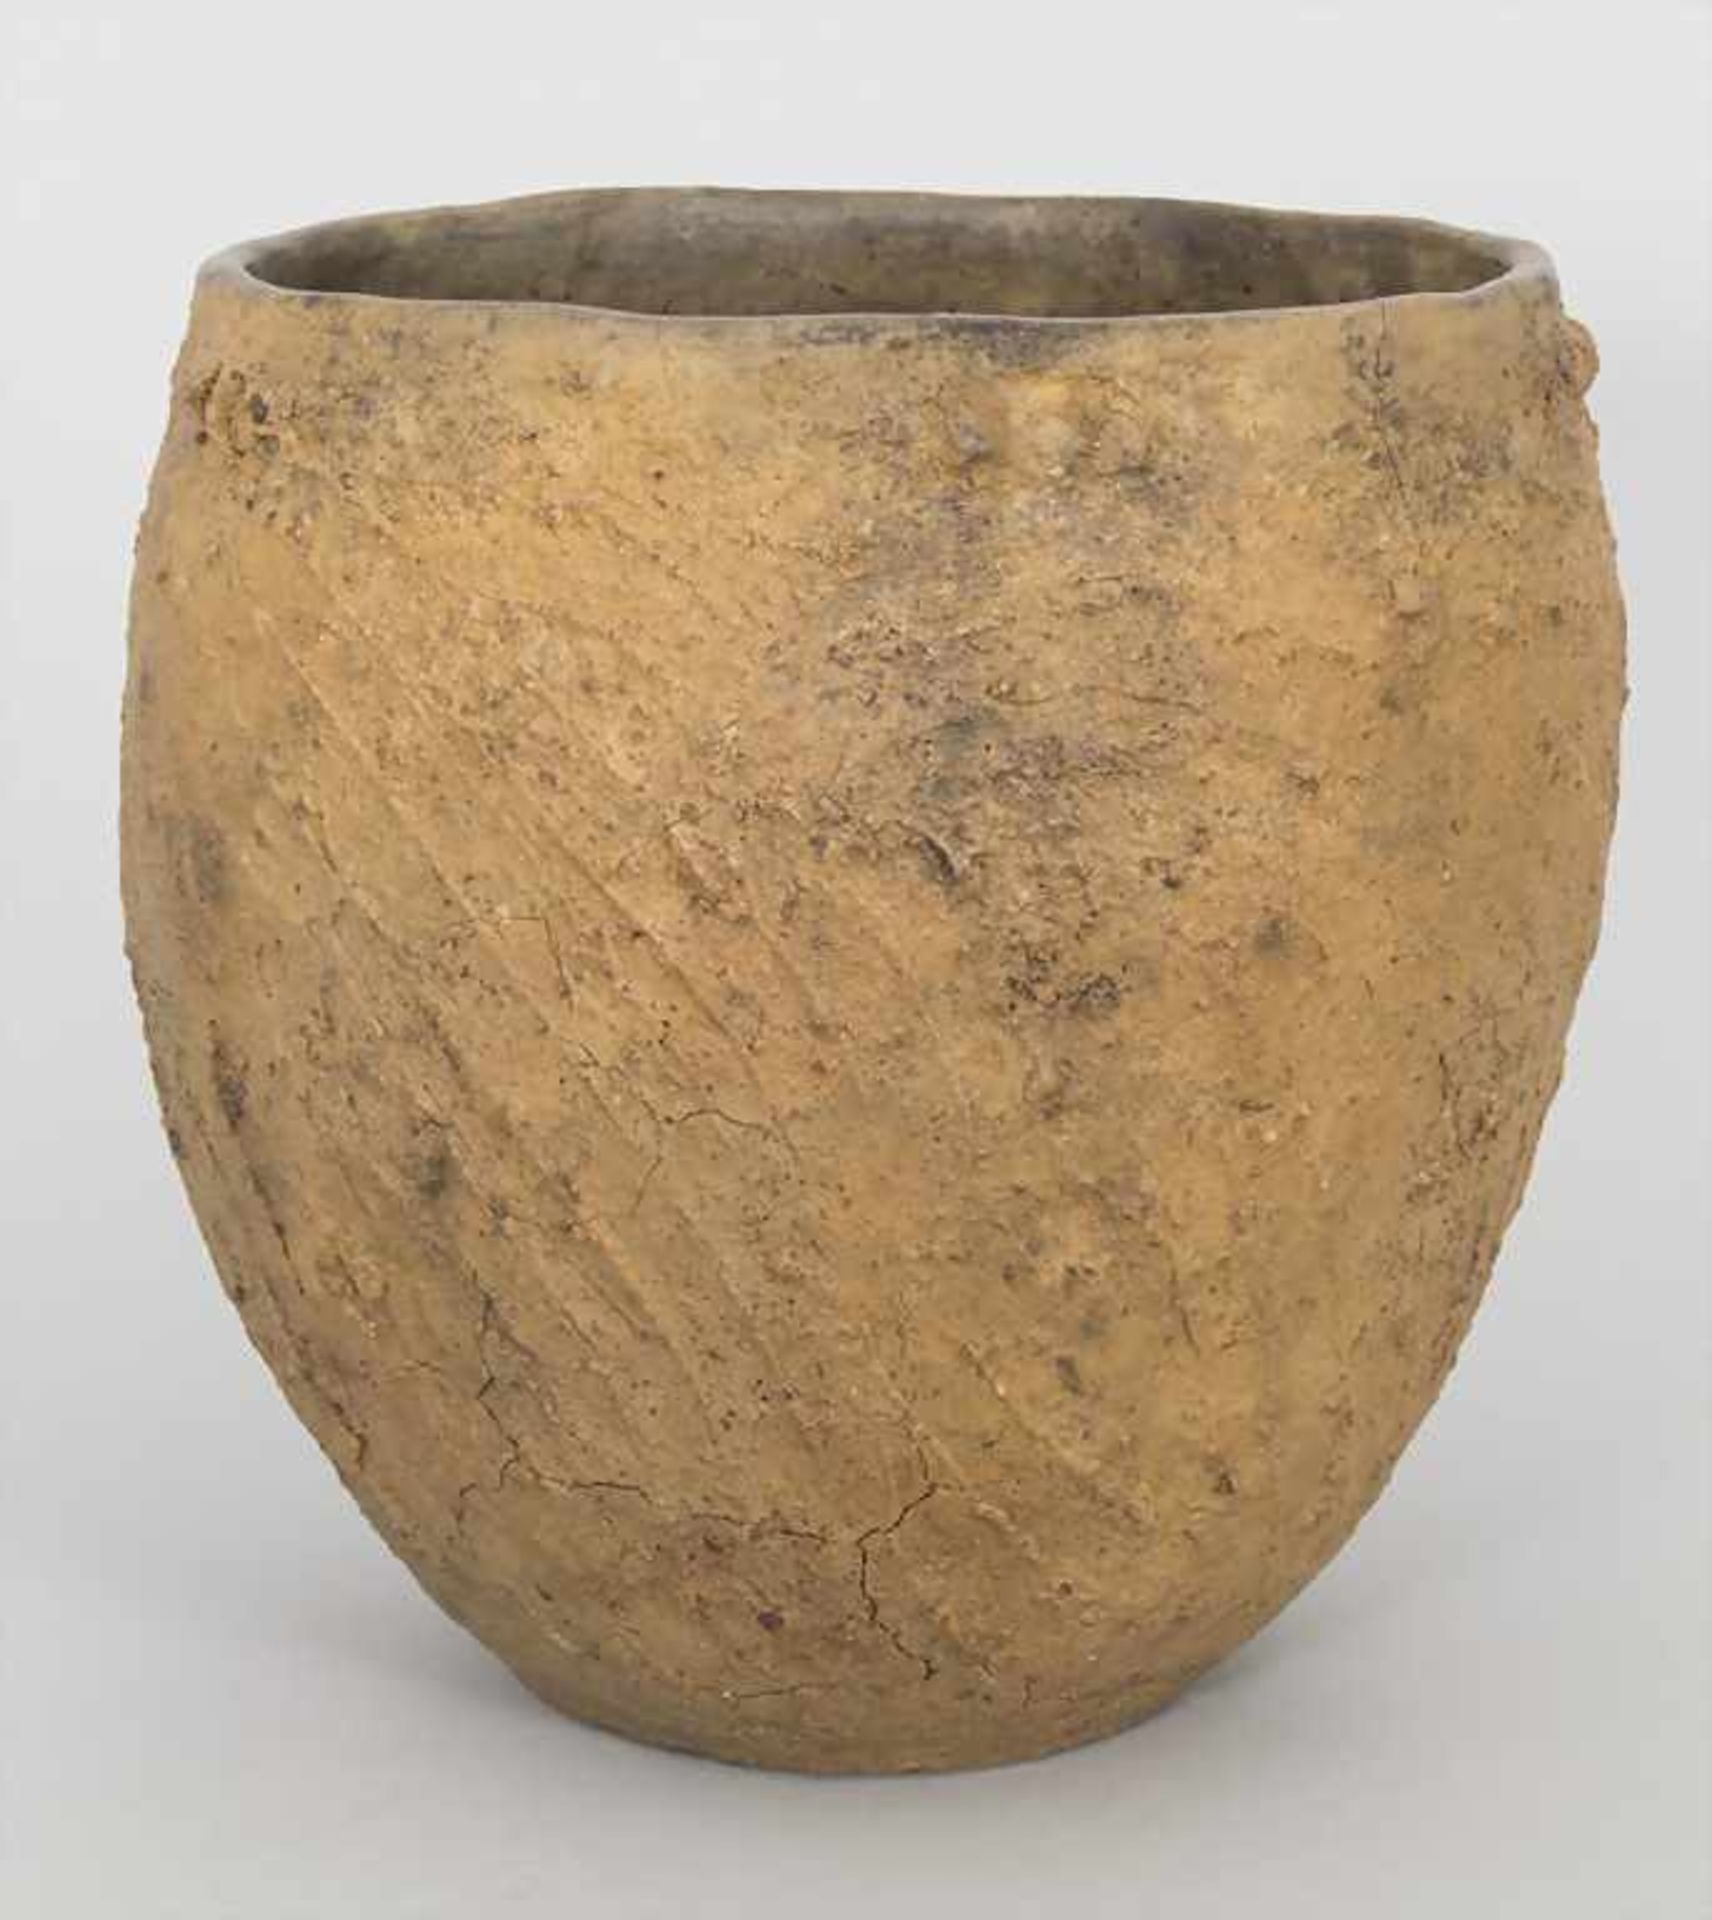 Bronzezeitliches Keramik-Gefäß / A Bronze Age ceramic vessel, Lausitzer Kultur, 9. - 6. Jh. v. Chr. - Bild 2 aus 6